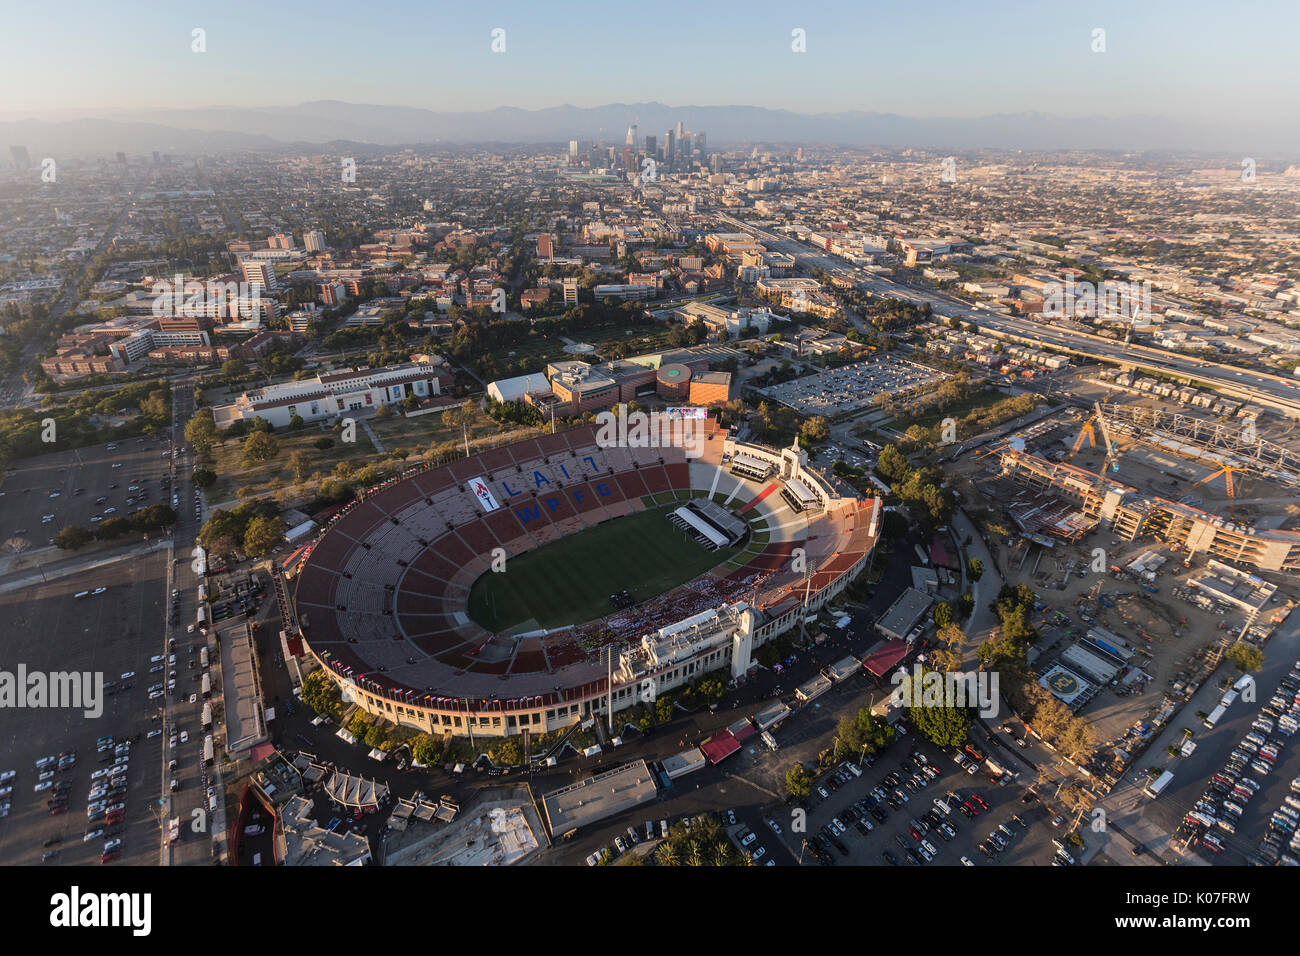 Los Angeles, Kalifornien, USA - 7. August 2017: Luftaufnahme des historischen LA Memorial Coliseum Stadium, USC und der Innenstadt. Stockfoto